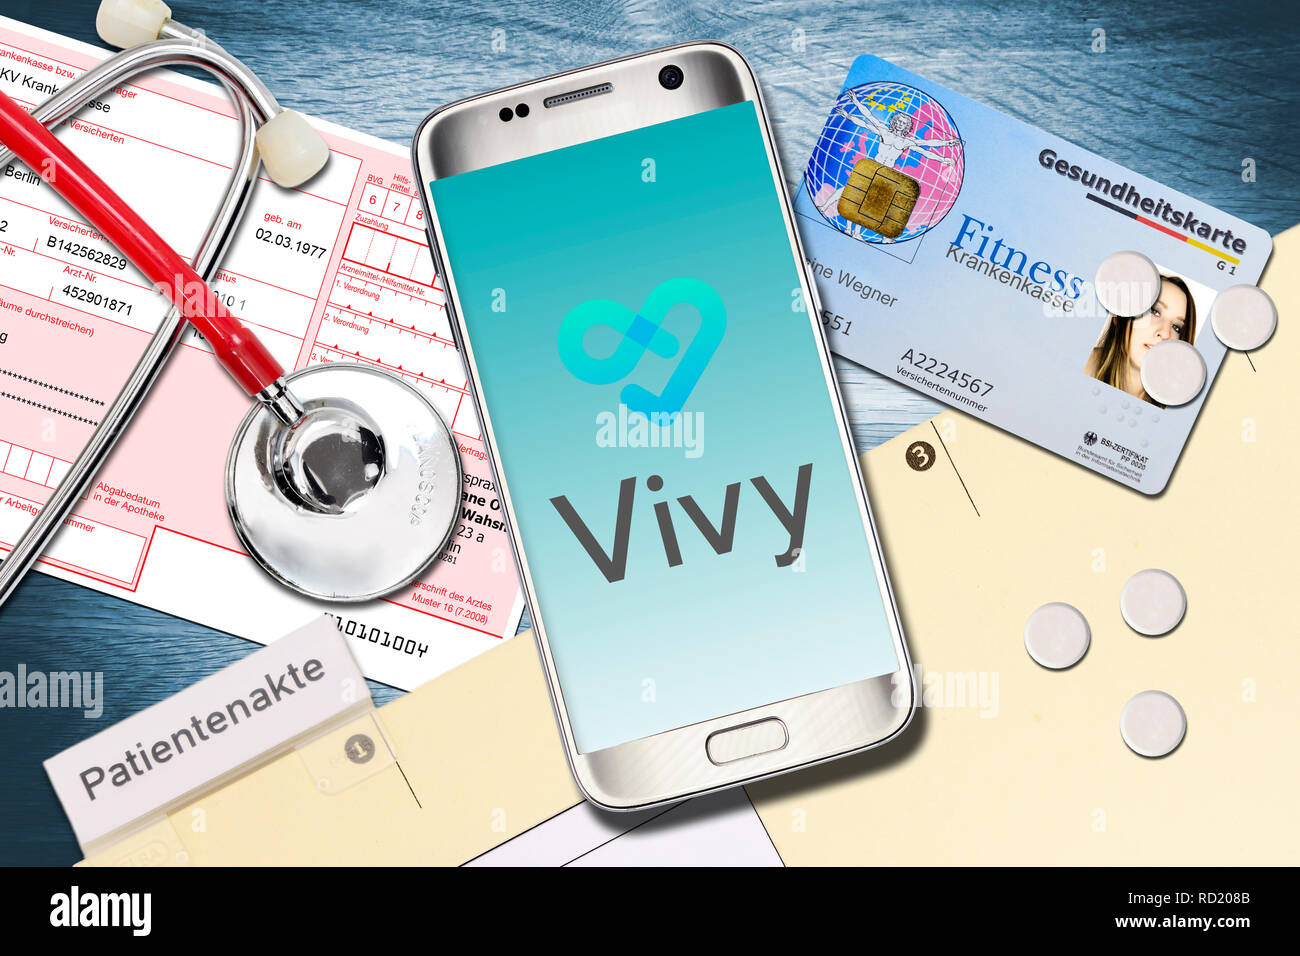 Loi du patient numérique Vivy, poste, symbolique, photo digitale Patientenakte Vivy App, Symbolfoto Banque D'Images